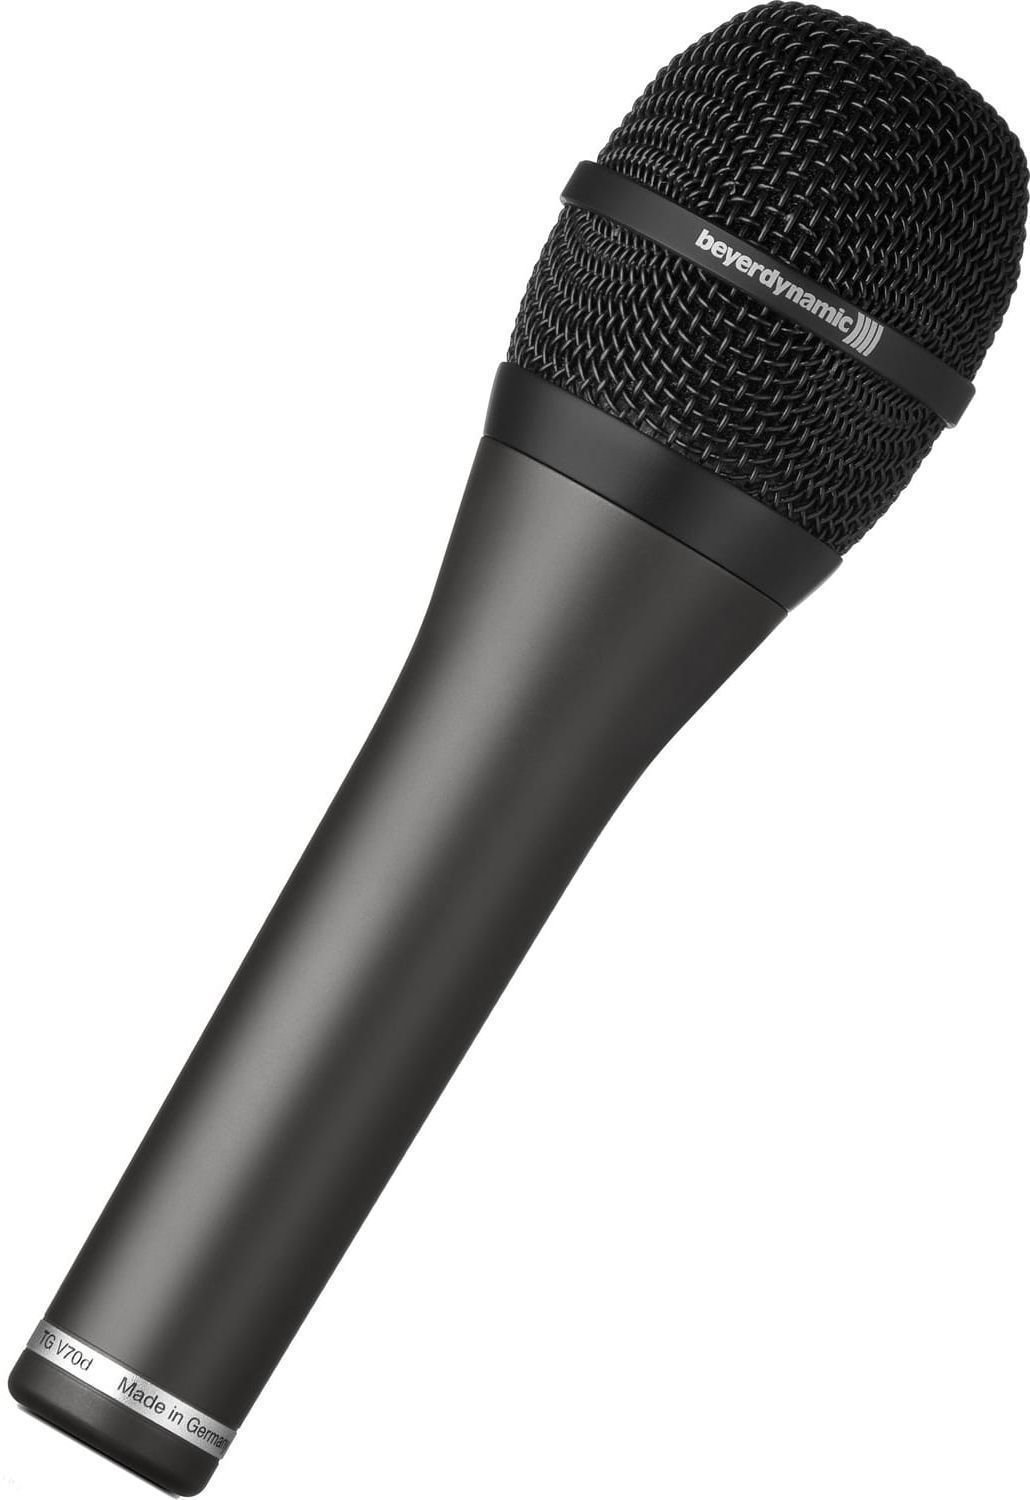 Vocal Dynamic Microphone Beyerdynamic TG V70 s Vocal Dynamic Microphone